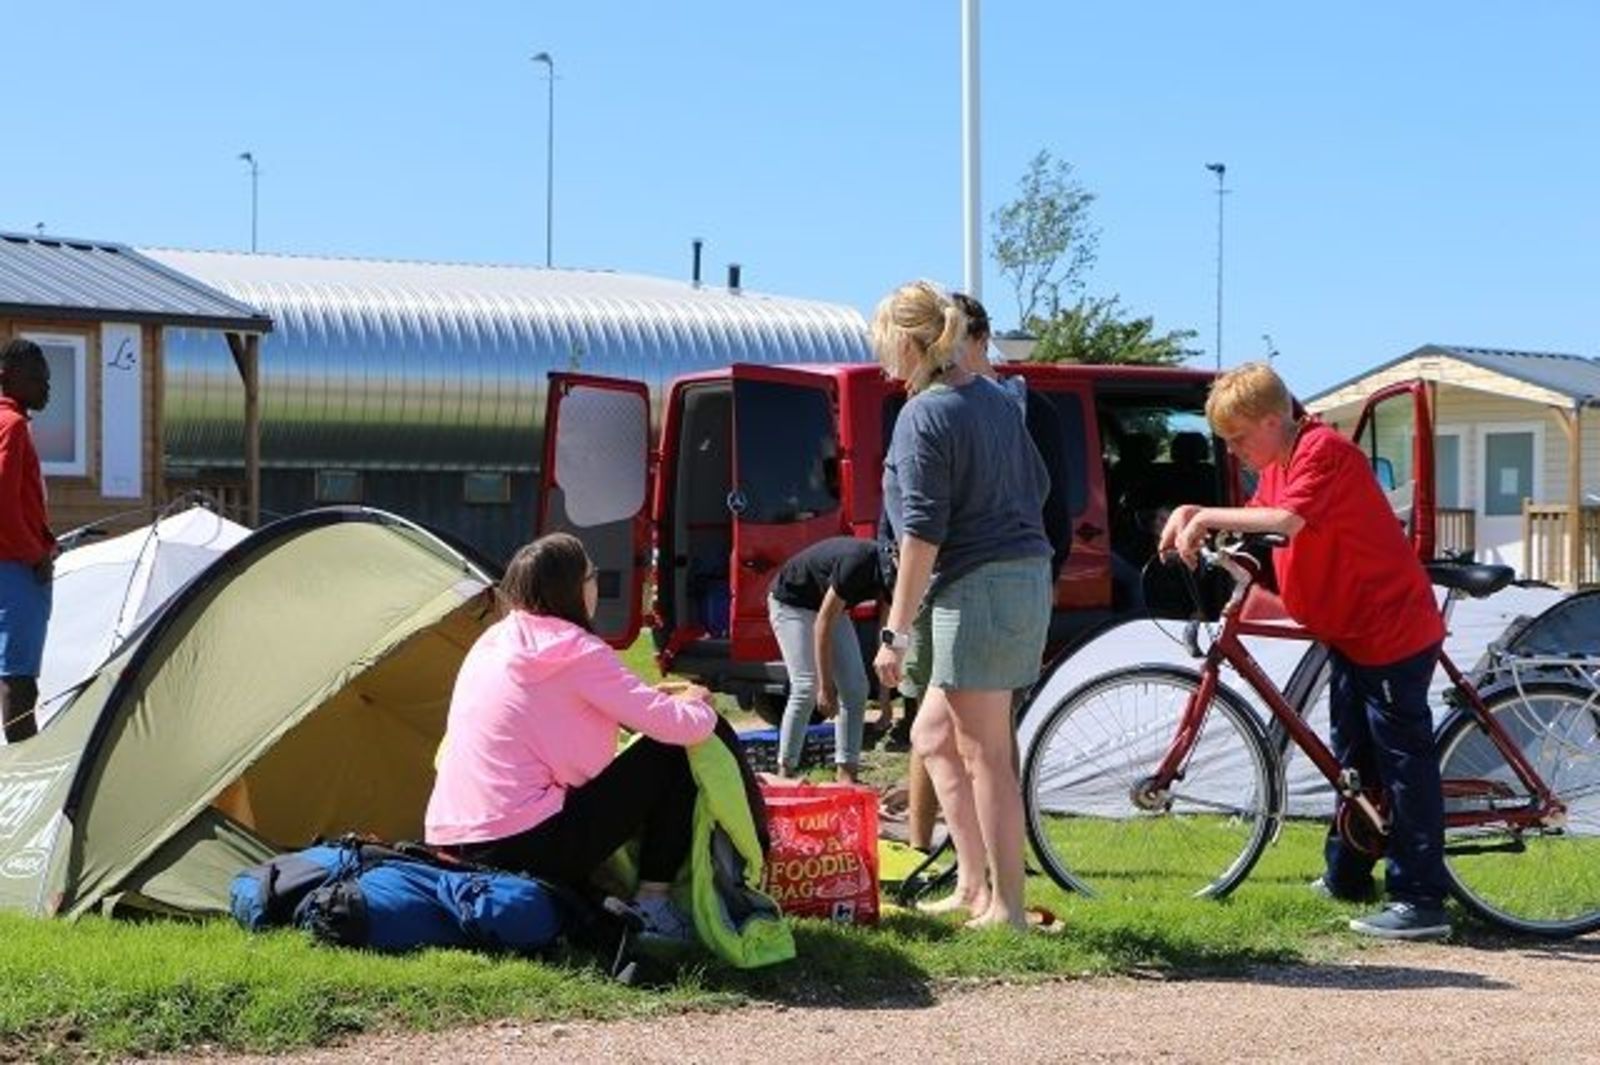 Kampeerplaats Comfort voor caravan / camper / tent